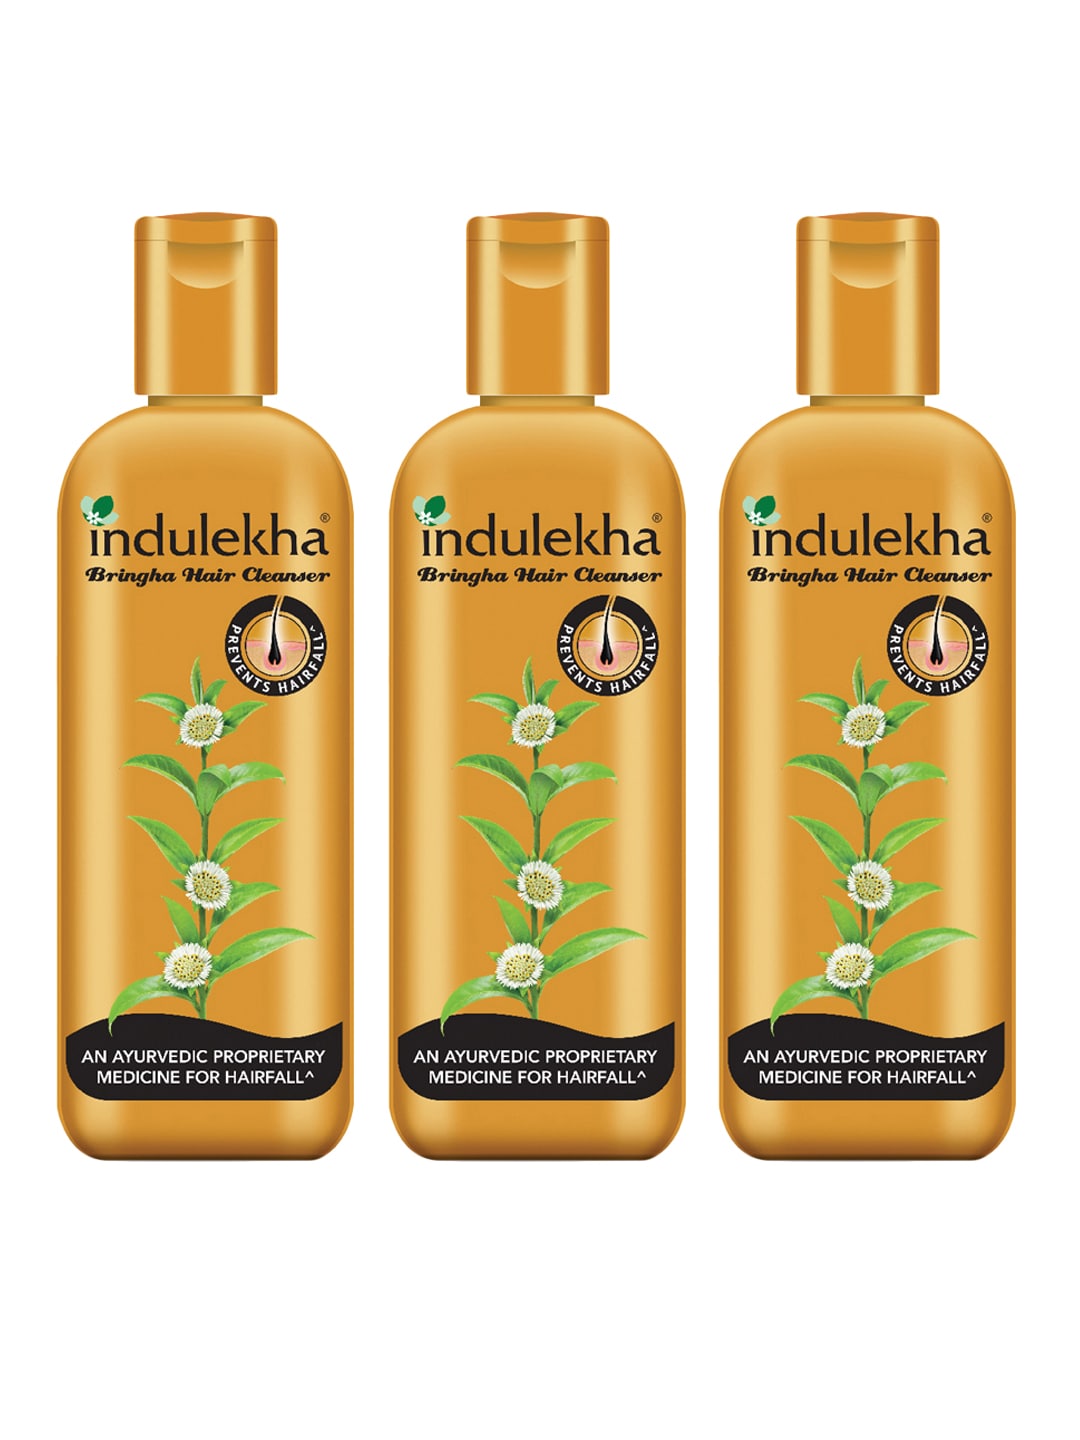 Indulekha Set of 3 Bringha Anti-Hairfall Shampoos - 200 ml each Price in India